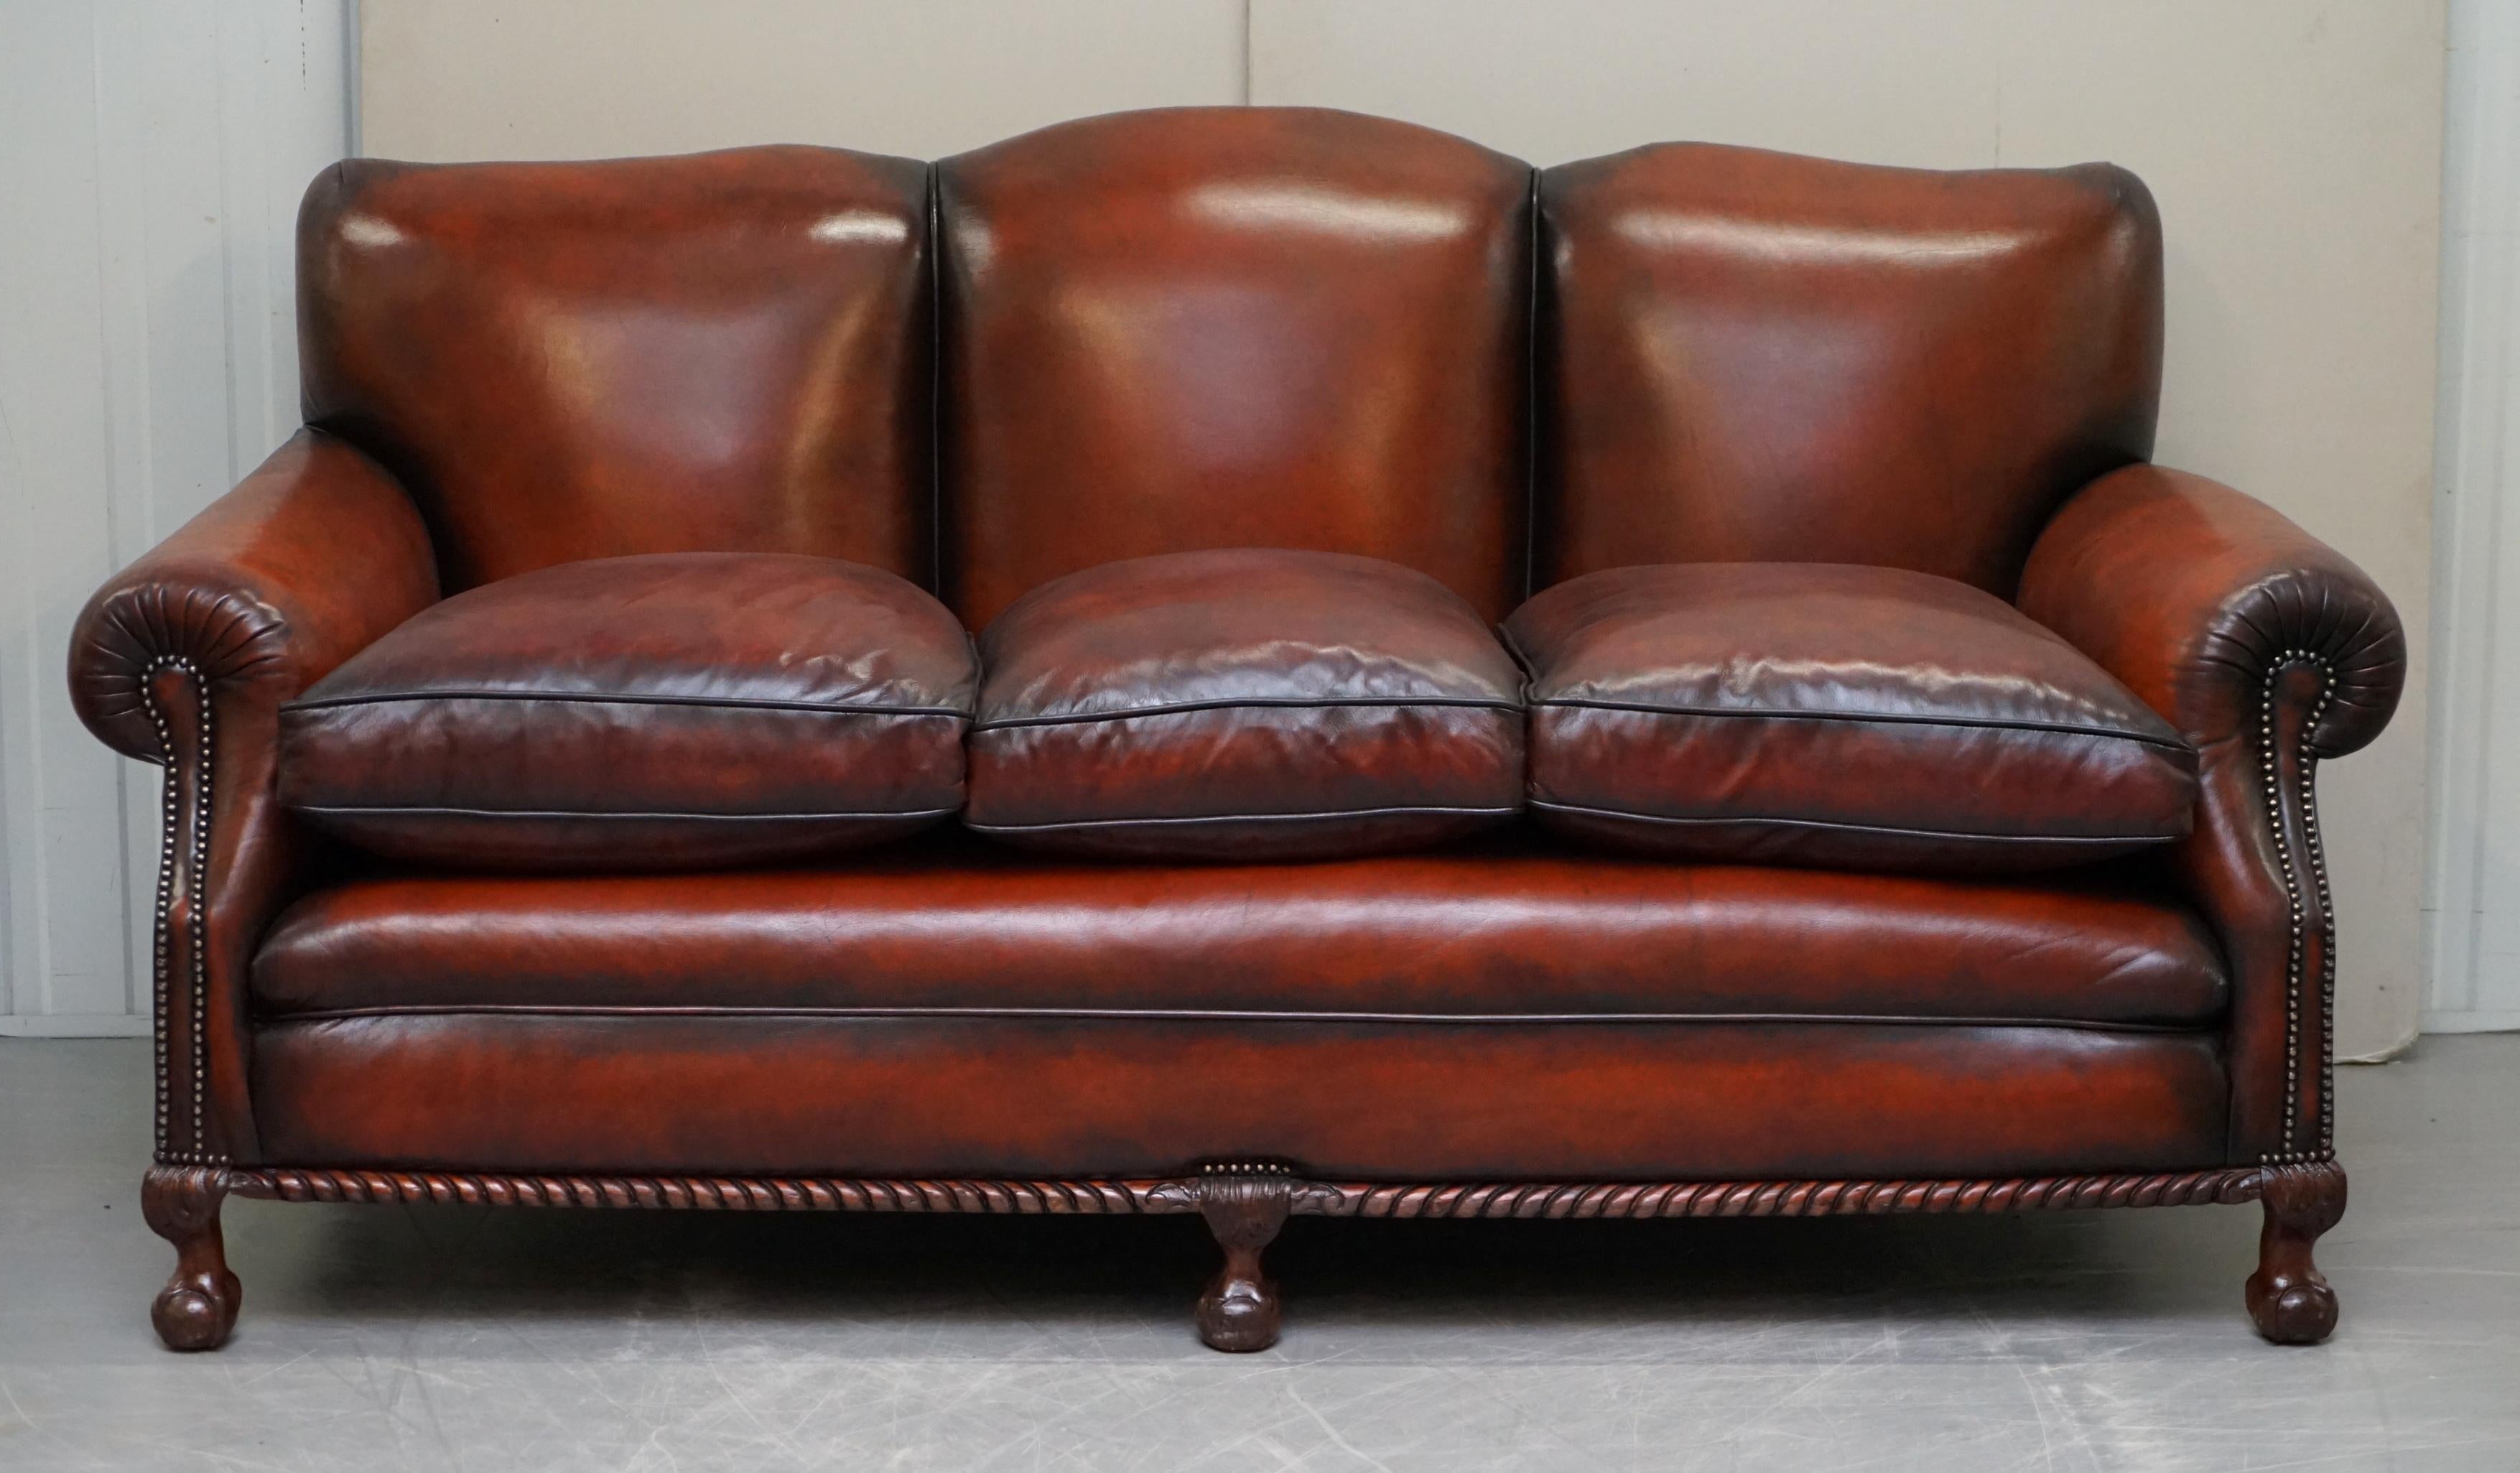 Wir freuen uns, diese atemberaubende vollständig restauriert späten viktorianischen Club-Sofa mit Thomas Chippendale-Stil Klaue & Ball Füße

Ein wirklich bemerkenswerter Fund. Ich habe bisher nur ein oder zwei frühe Clubsofas mit Beinen im